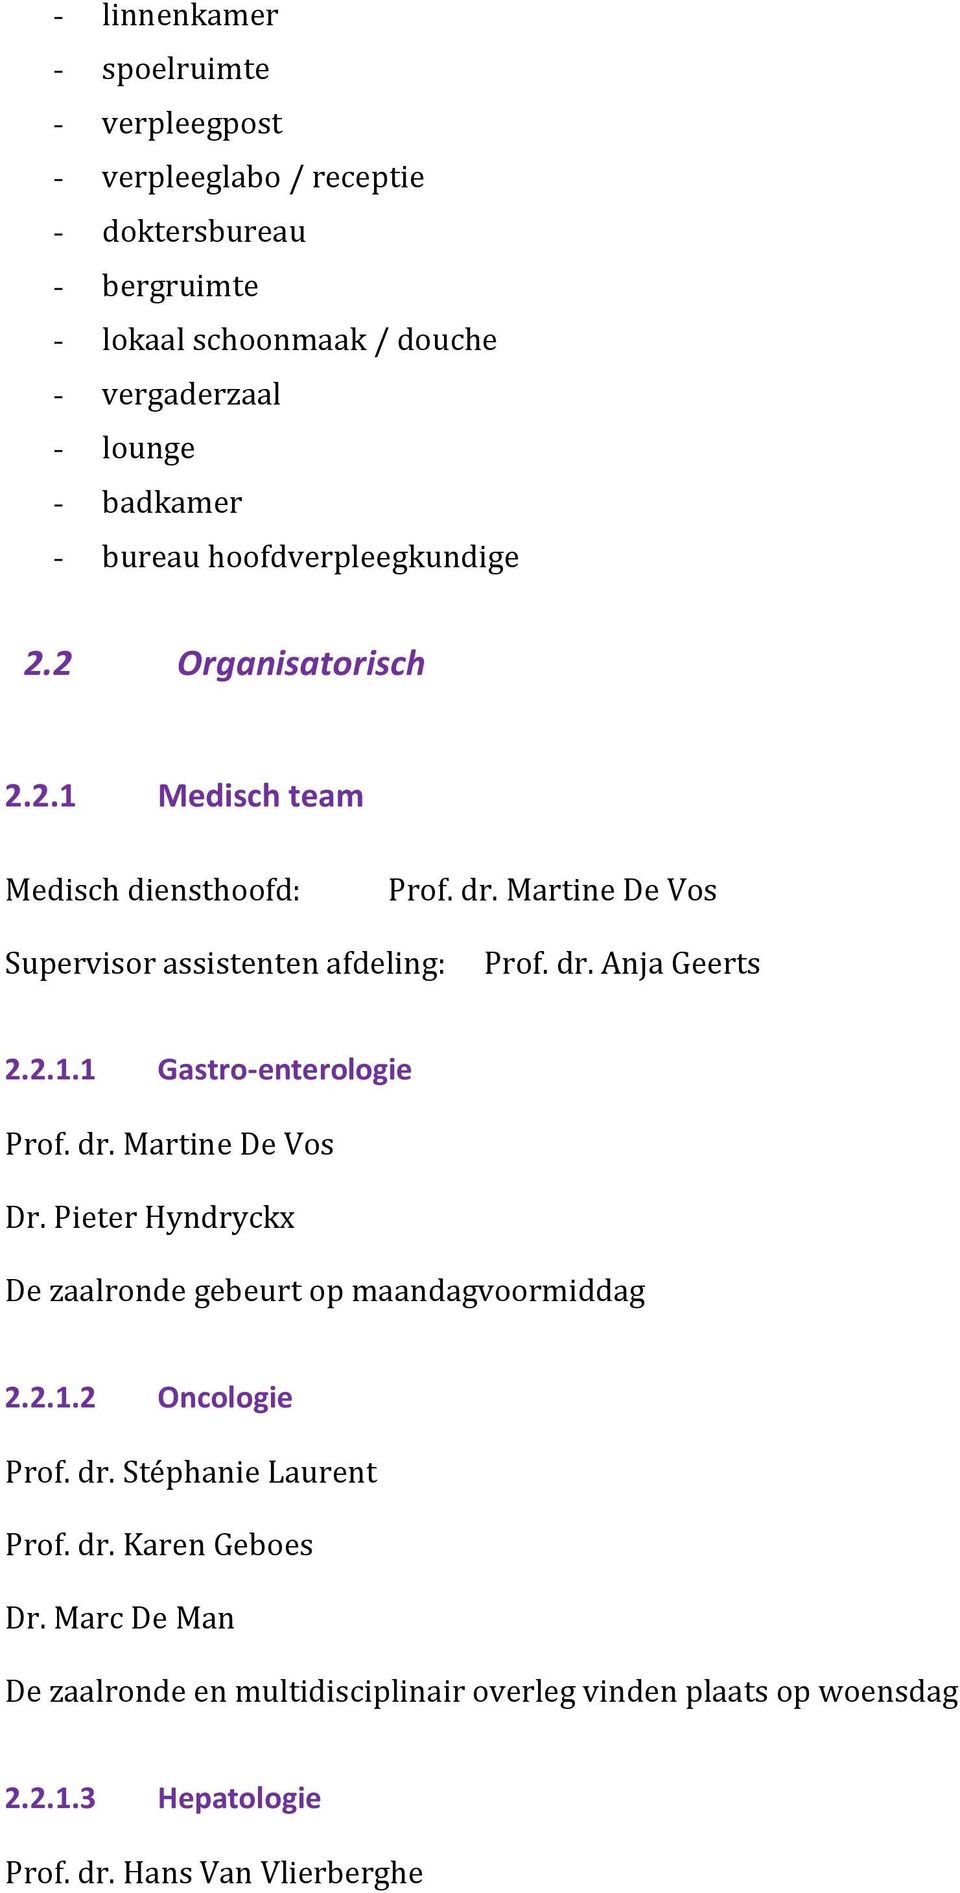 2.1.1 Gastro-enterologie Prof. dr. Martine De Vos Dr. Pieter Hyndryckx De zaalronde gebeurt op maandagvoormiddag 2.2.1.2 Oncologie Prof. dr. Stéphanie Laurent Prof.